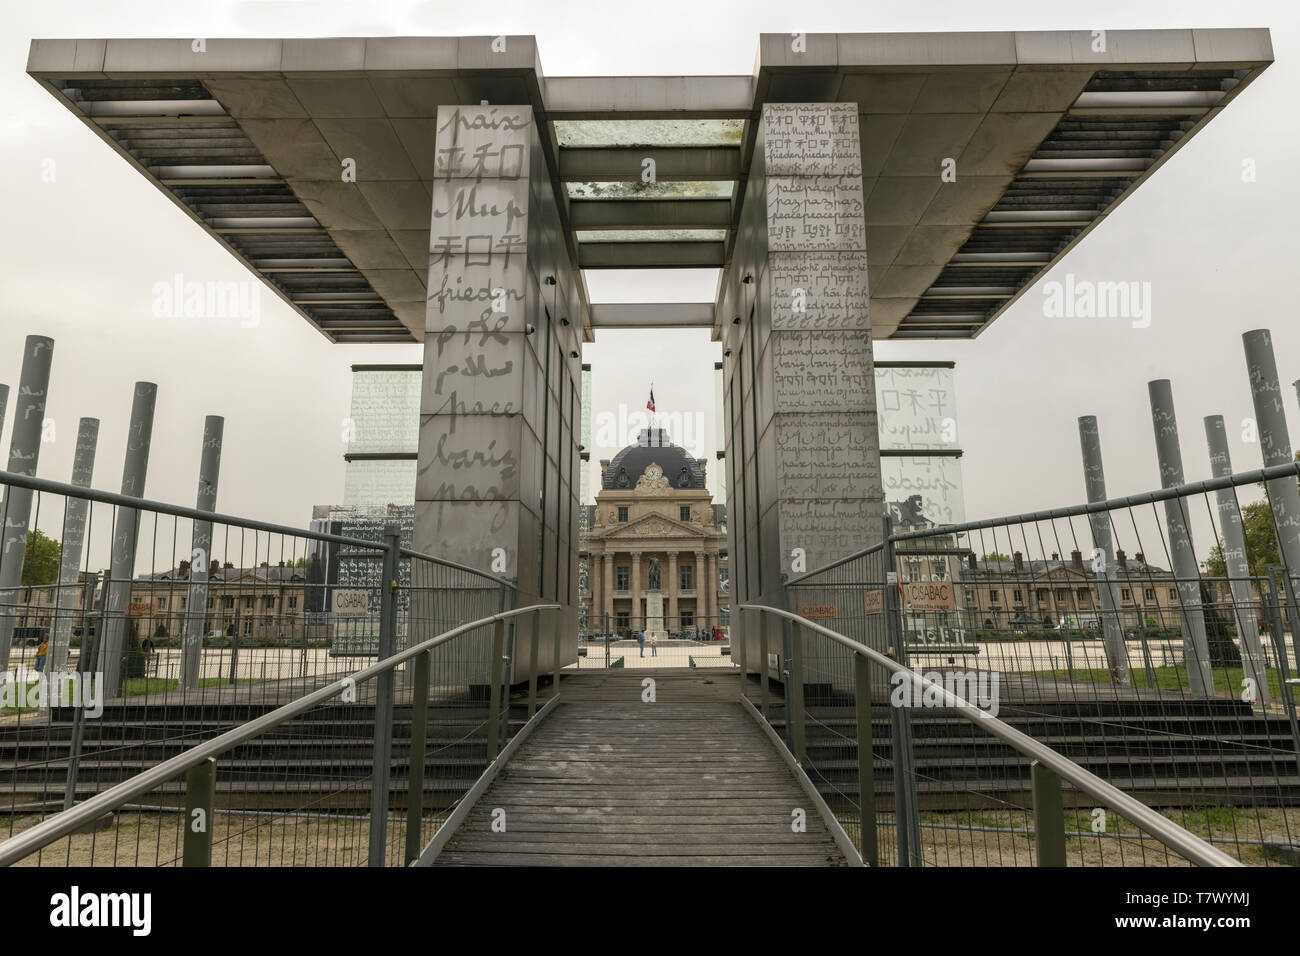 Francia, Paris, el muro de la Paz, situado en el Champ-de-Mars para la conmemoración del año 2000, La estructura consta de 12 paneles de vidrio. Foto de stock